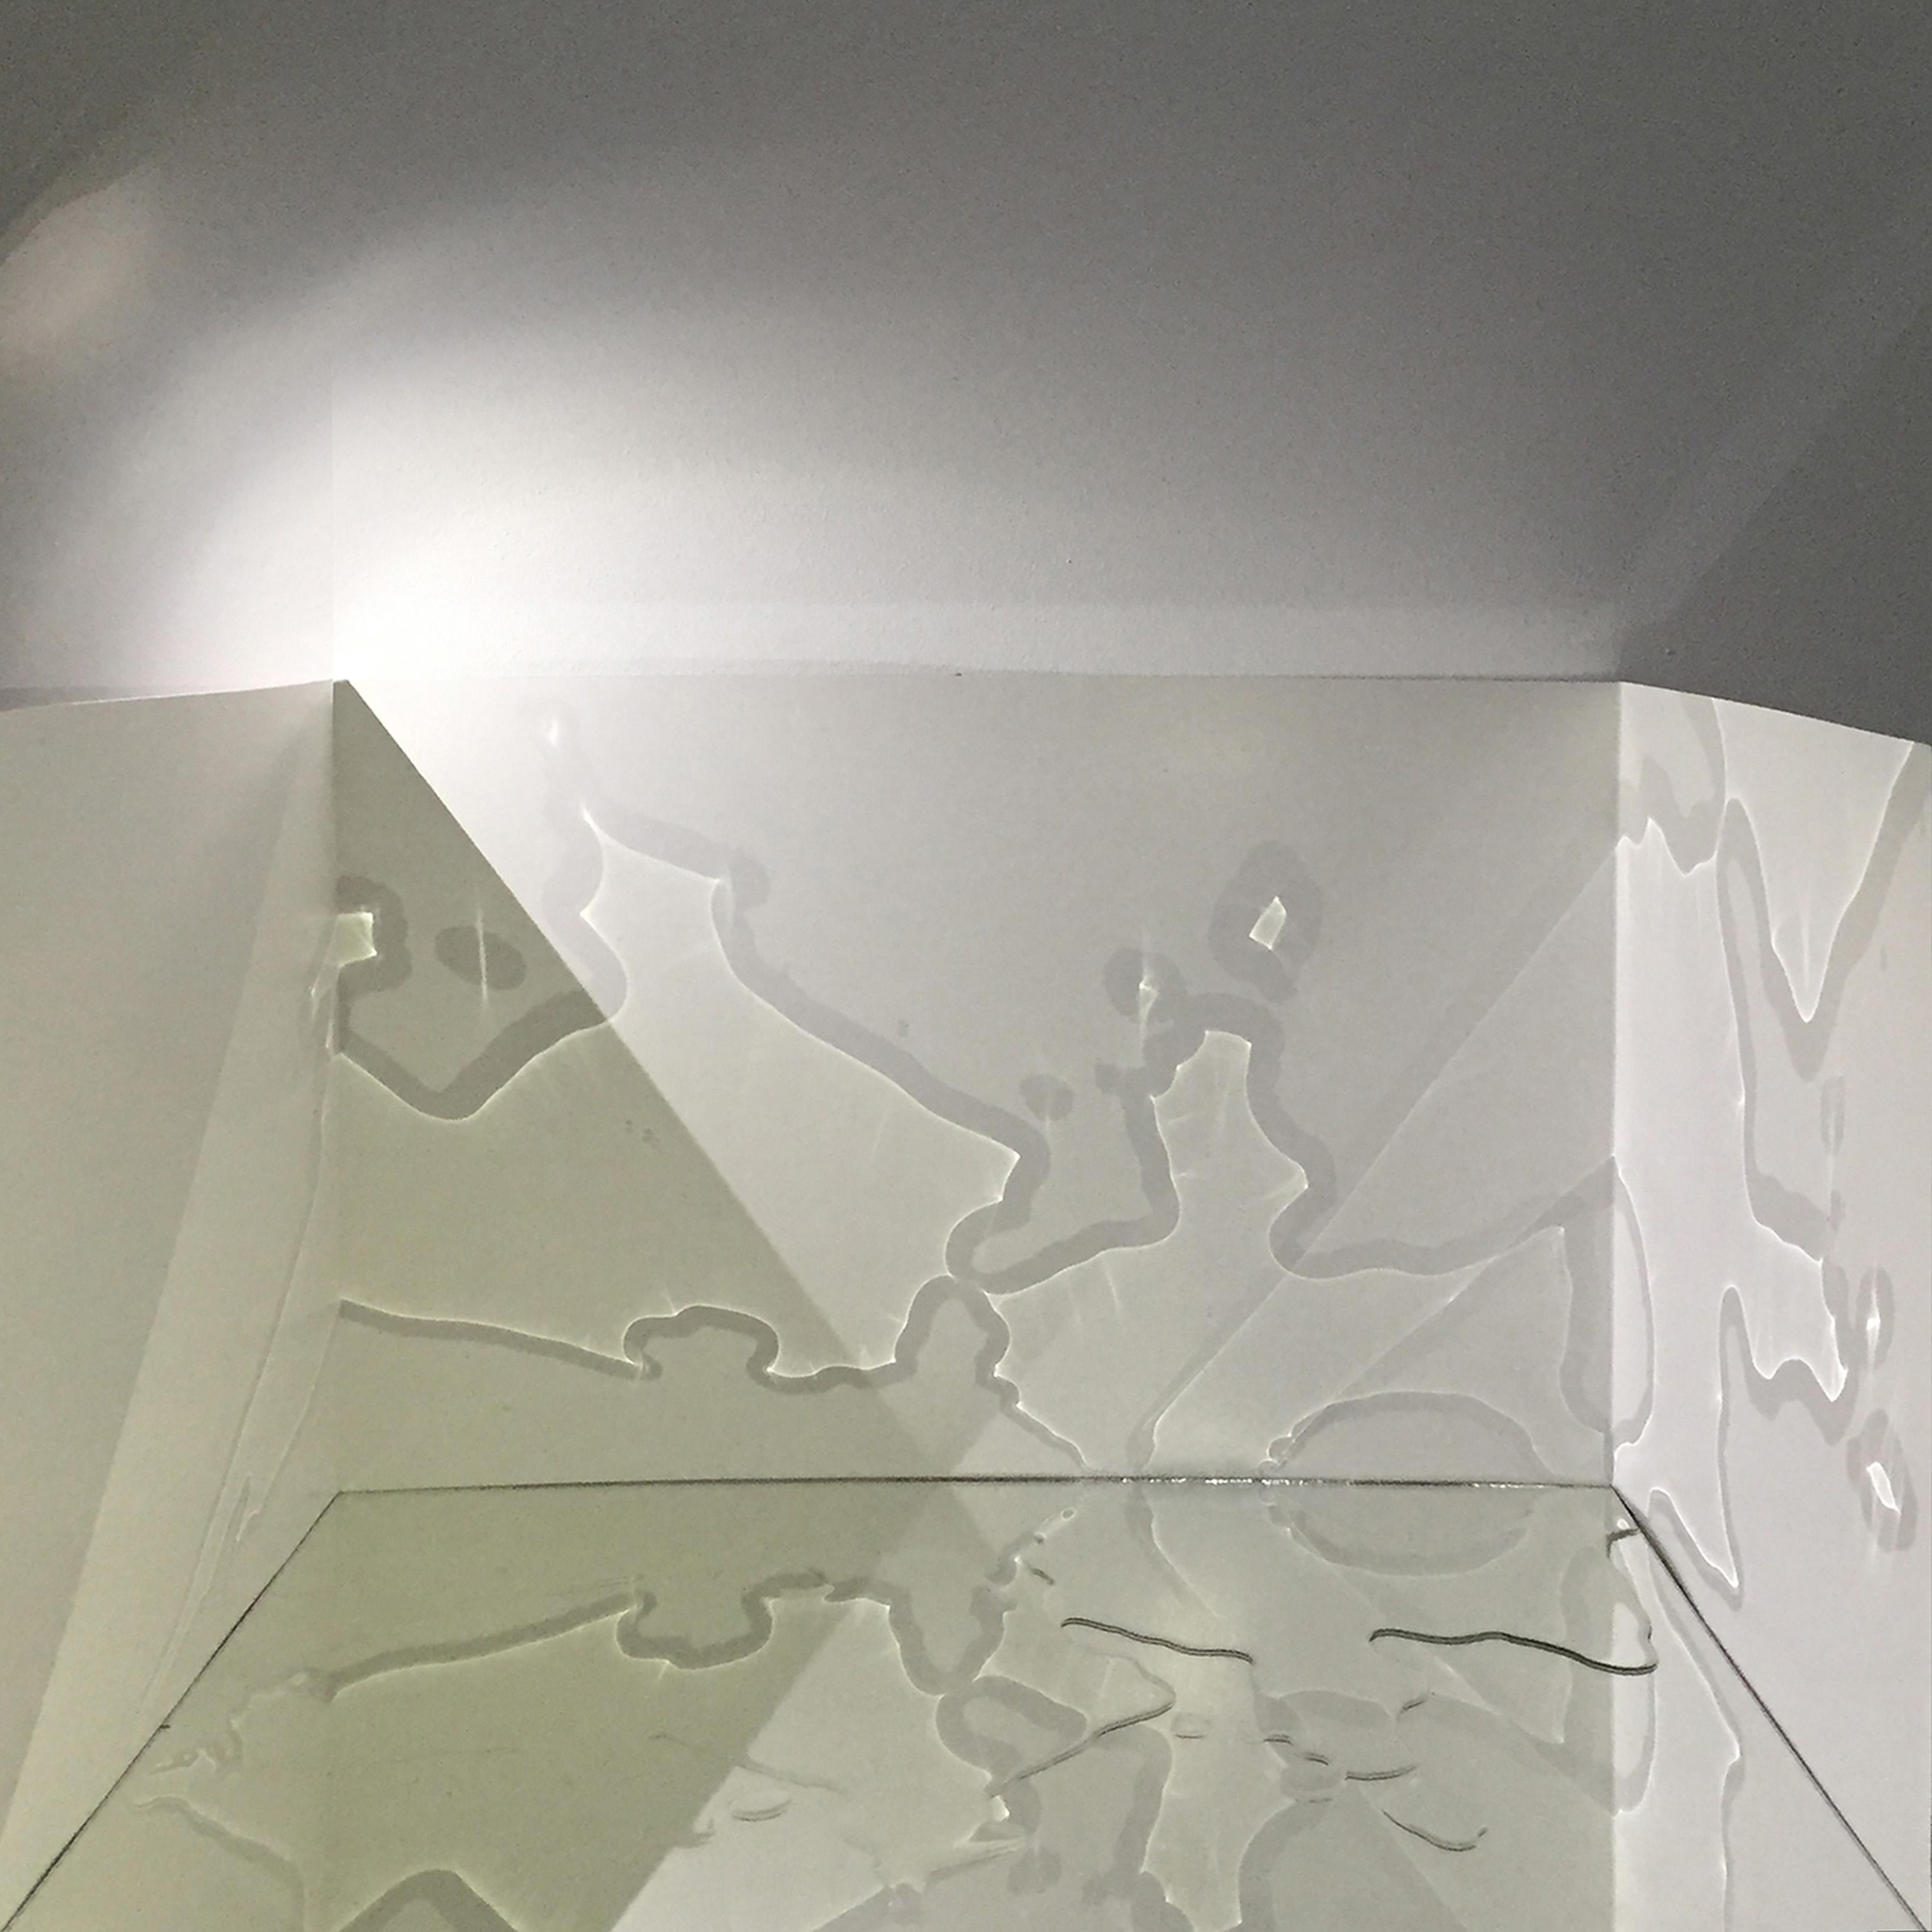 Hind Khettou
L'eau onirique caustique, 2015
Installation de miroirs, tapis mouse et eau